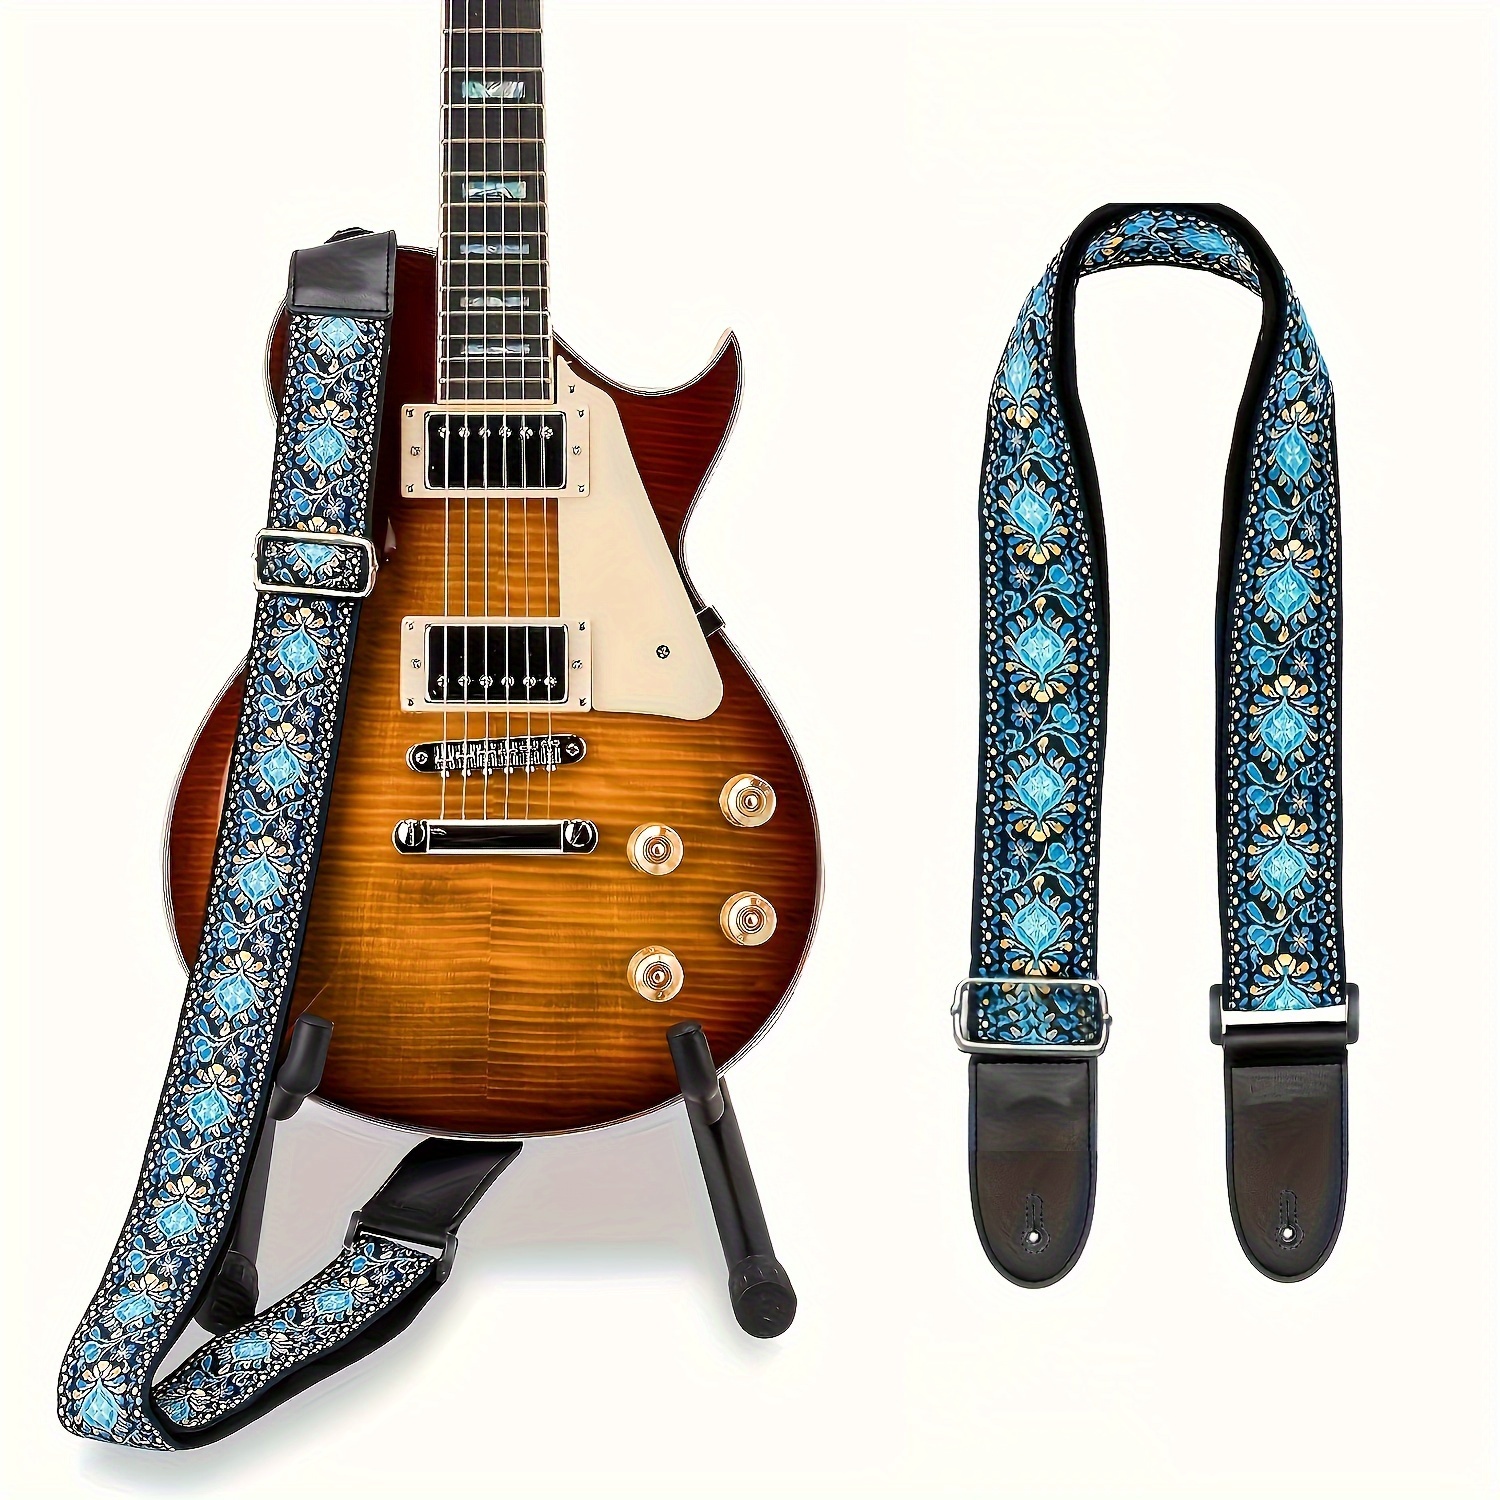 Confortable réglable épaule de sangle de guitare en cuir synthétique  termine pour Acoustic Folk Classique Guitares électriques Basse 